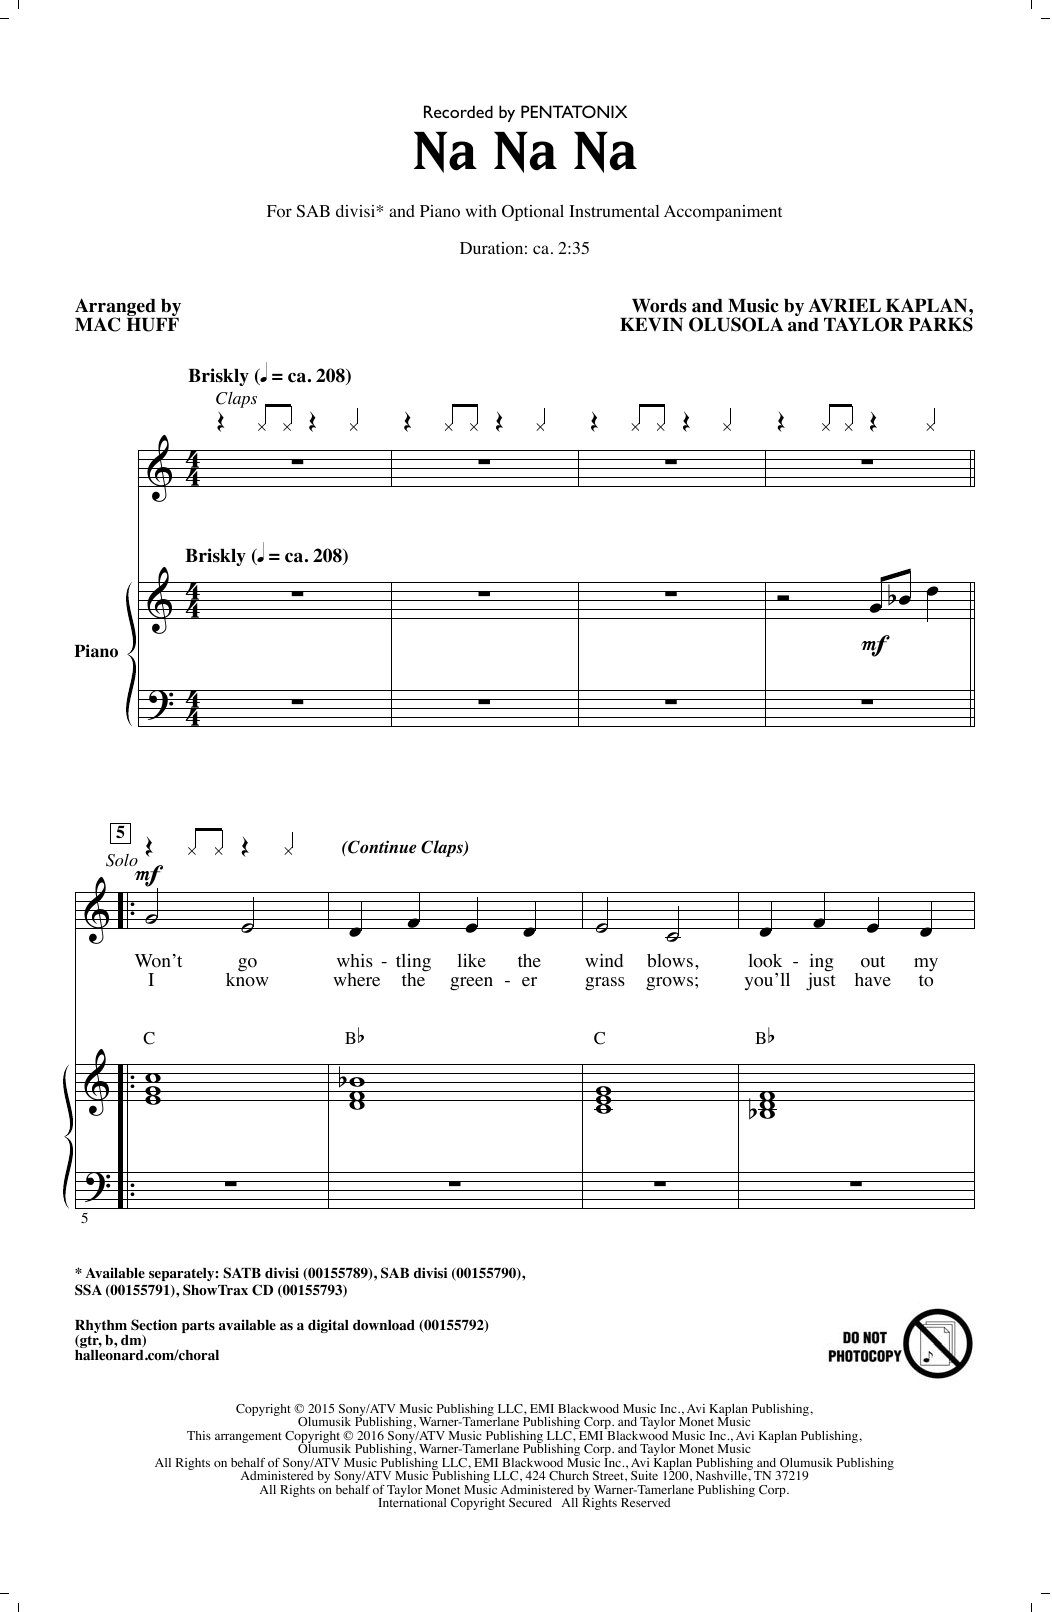 Pentatonix Na Na Na (arr. Mac Huff) Sheet Music Notes & Chords for SAB - Download or Print PDF